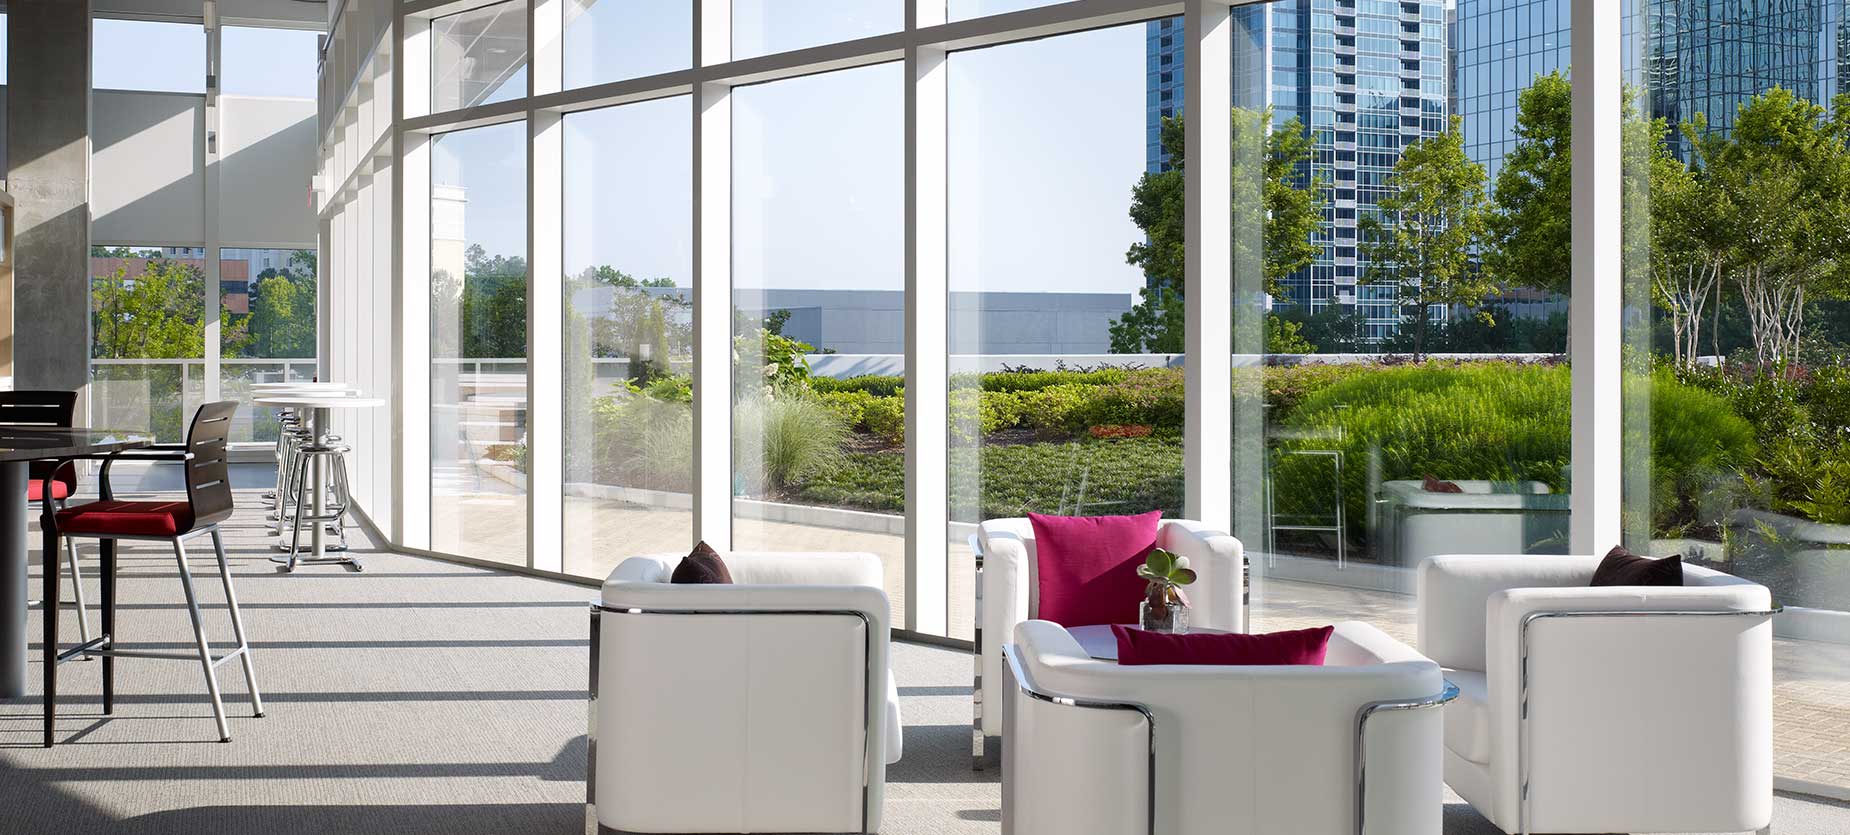 Dieser soziale Bereich verfügt über komfortable Sitzgelegenheiten in unterschiedlichen Anordnungen, die die Interaktion und Kooperation begünstigen. Der Blick auf die Skyline von Atlanta und die umliegenden Gärten unterstreicht das schöne Ambiente.